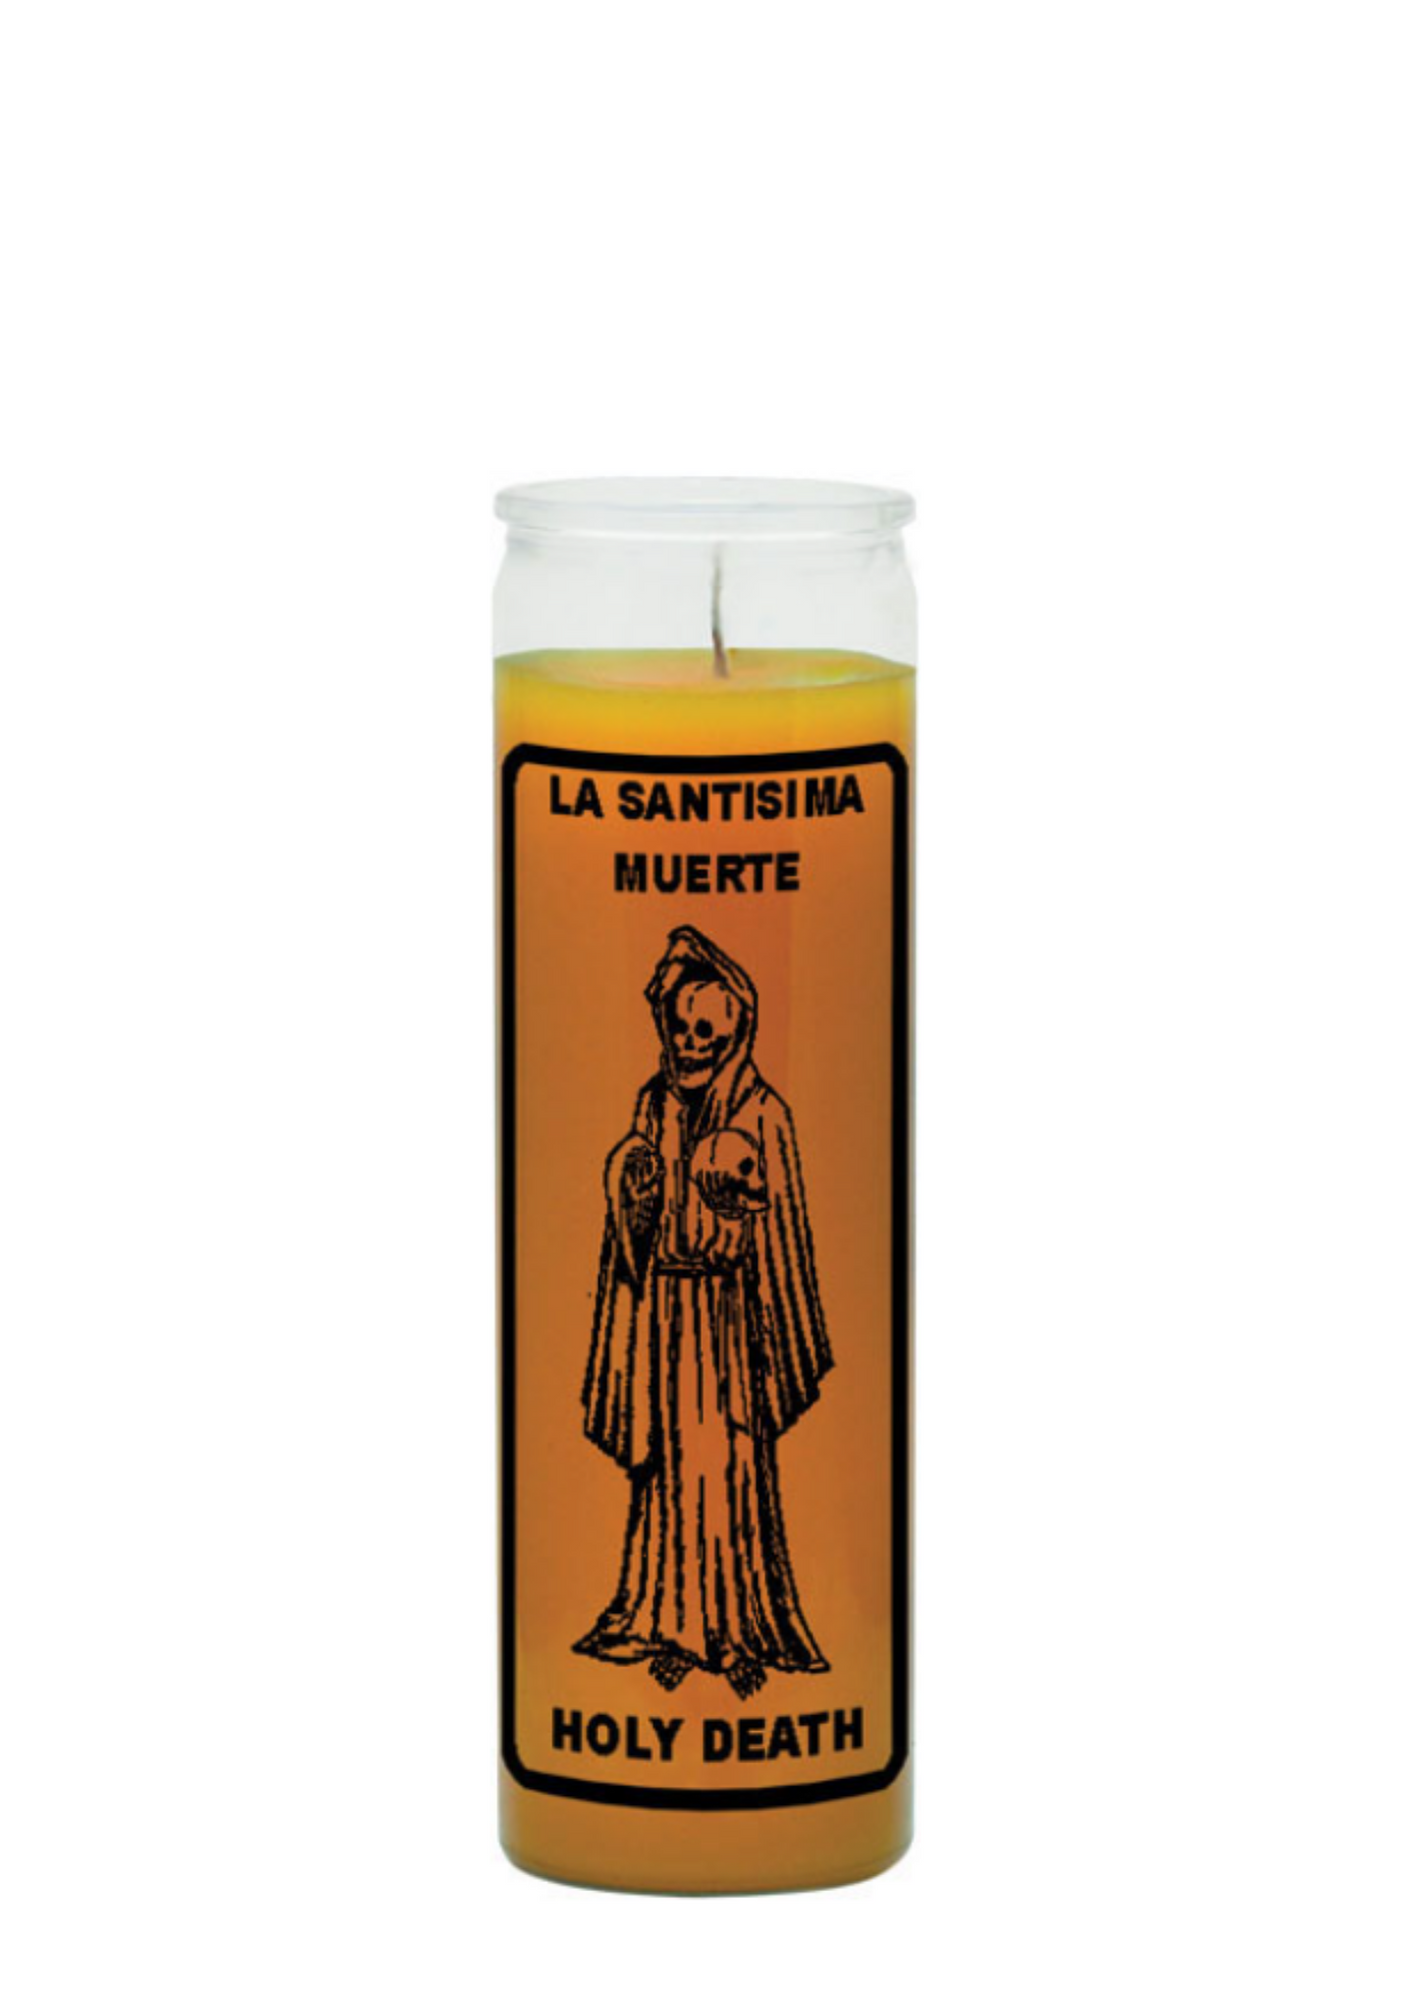 Holy death / la santisima muerte (gold) 1 color 7 day candle